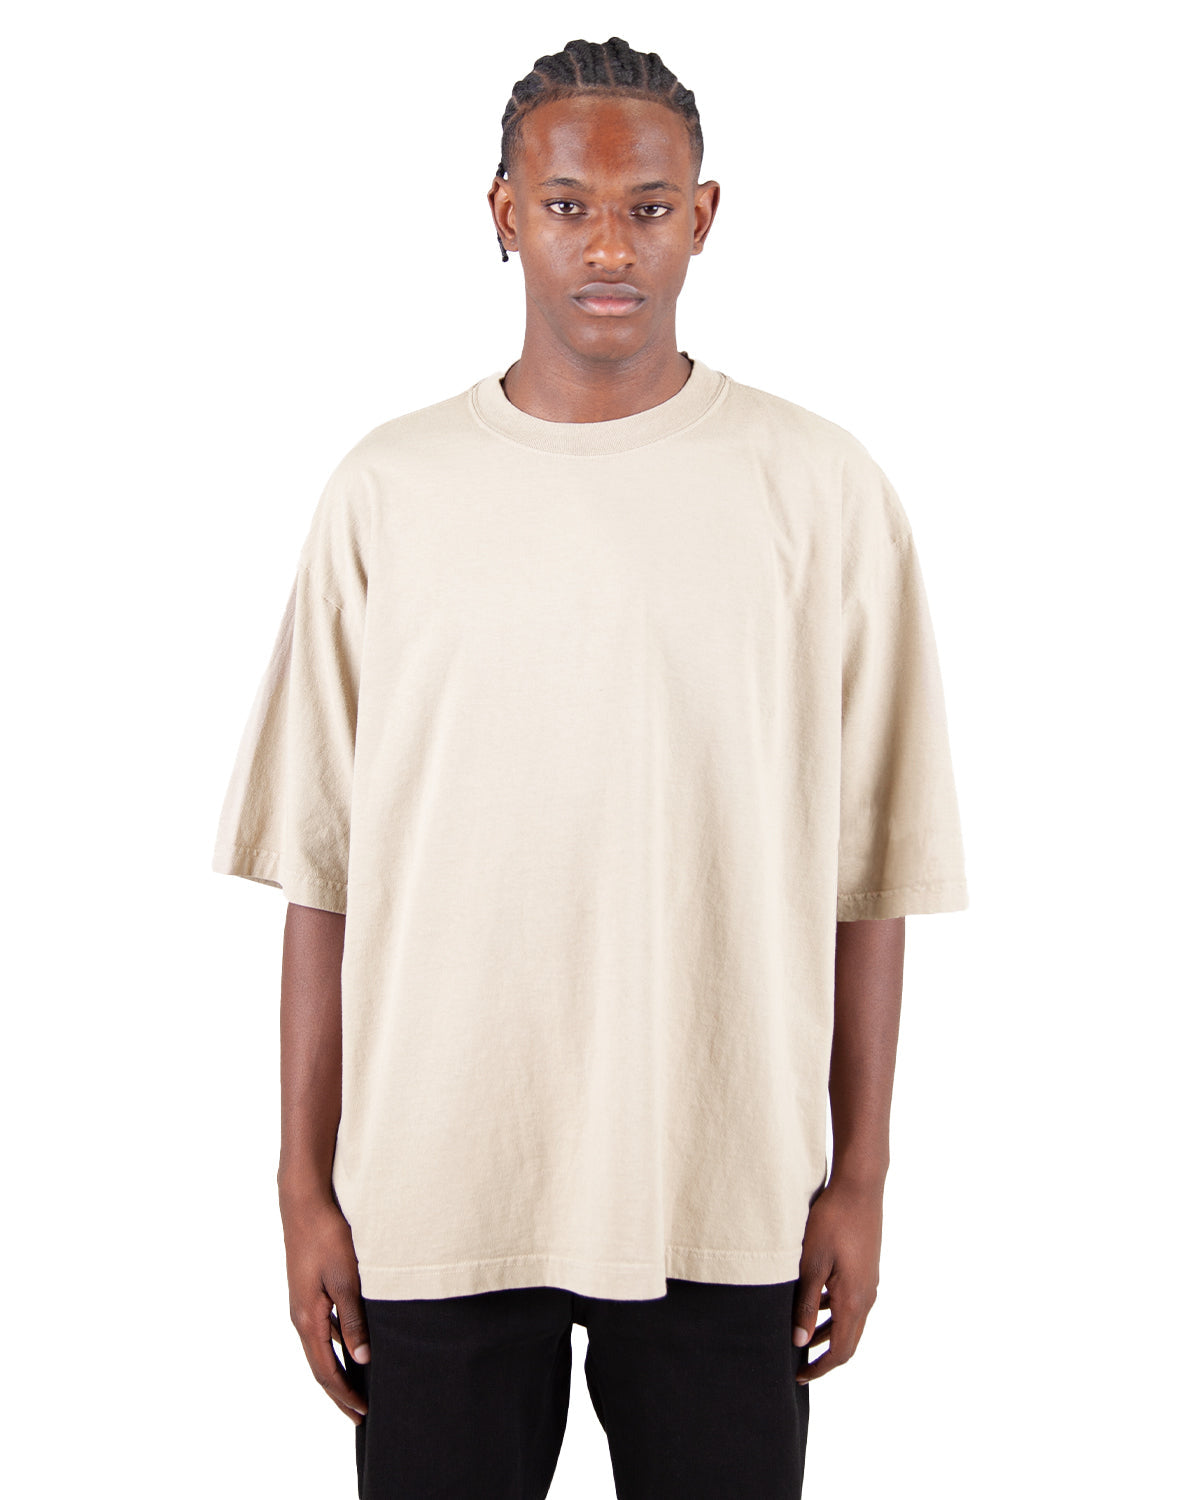 Drop Shoulder White T-shirt